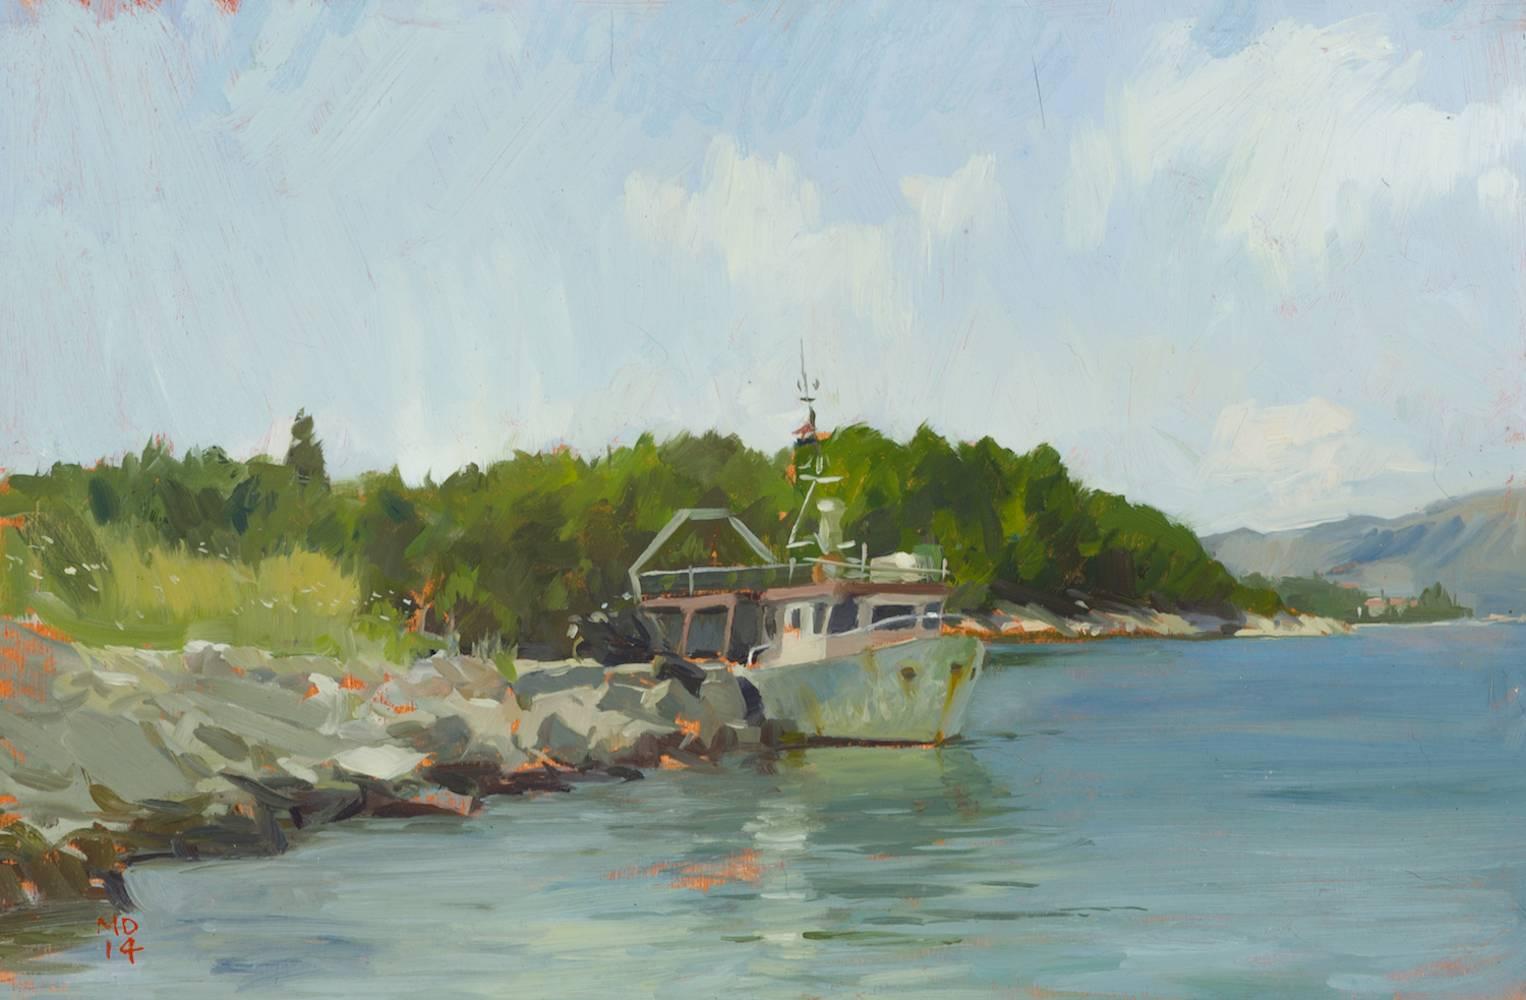 Landscape Painting Marc Dalessio - "Korcula Fishing Boat" peinture contemporaine en plein air, bleu, vert, rivage.